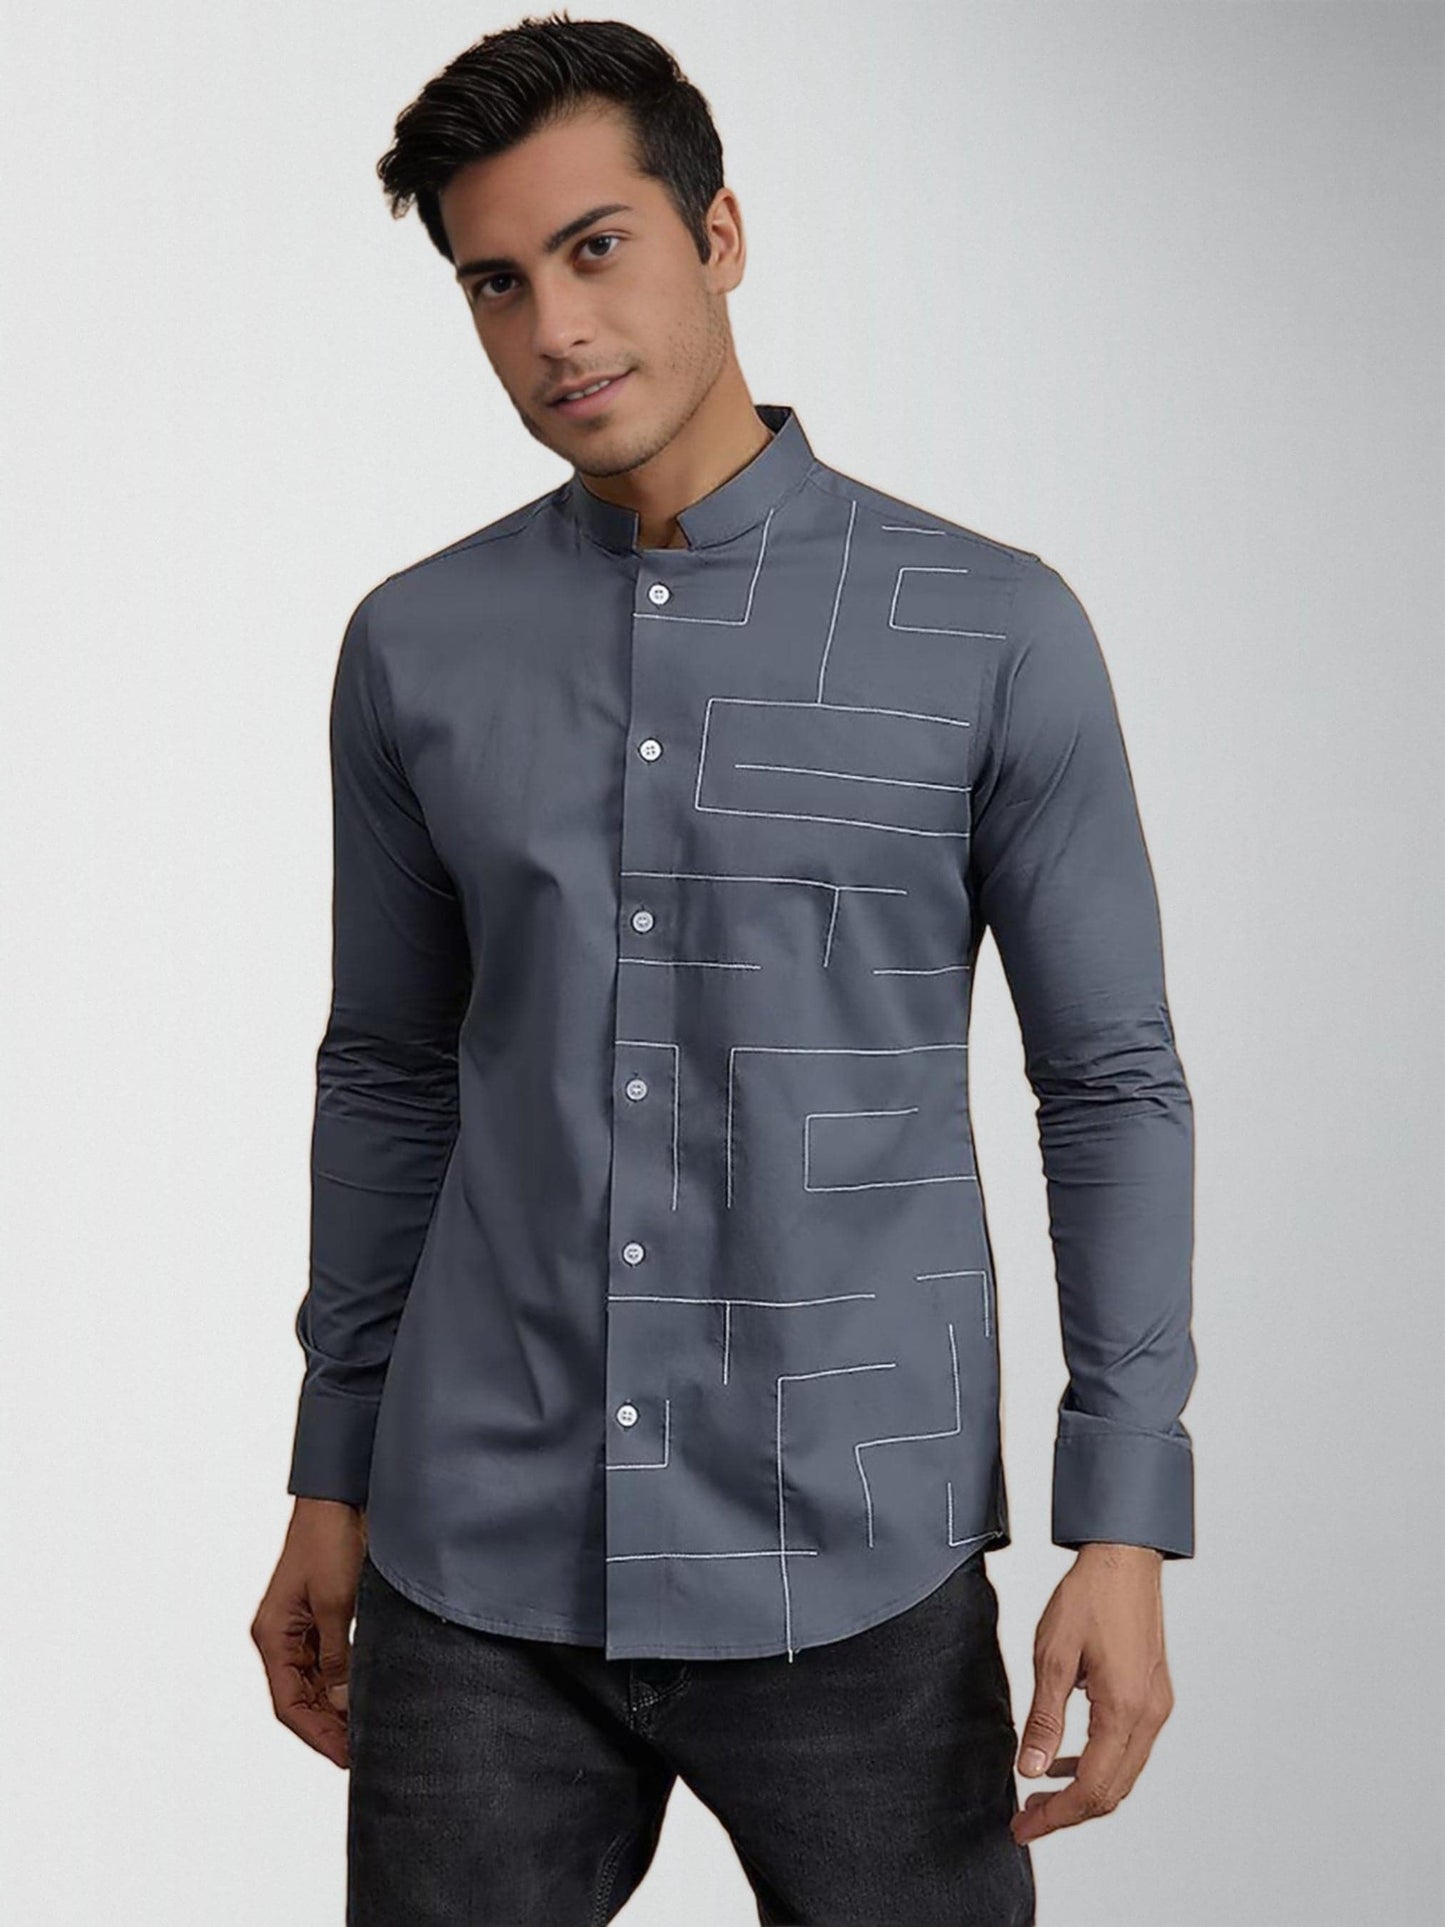 Embroidered Mandarin Collar Cotton Semi-Formal Shirt